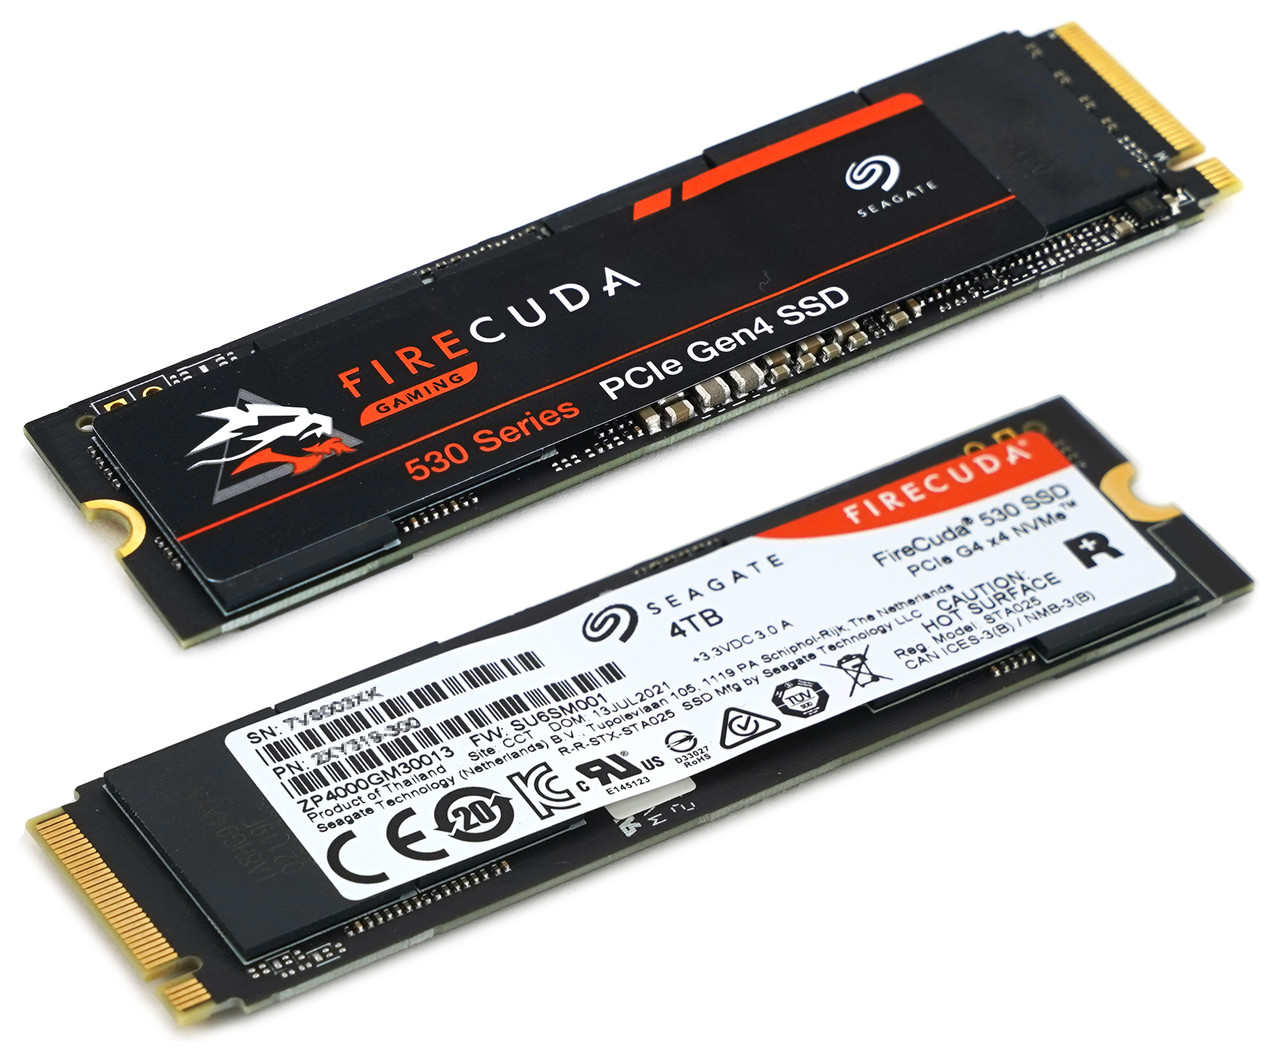 ▲ 씨게이트 파이어쿠다 530은 PCIe 4.0 기반 제품 중 성능 및 TBW 쓰기 수명 등이 우수하다